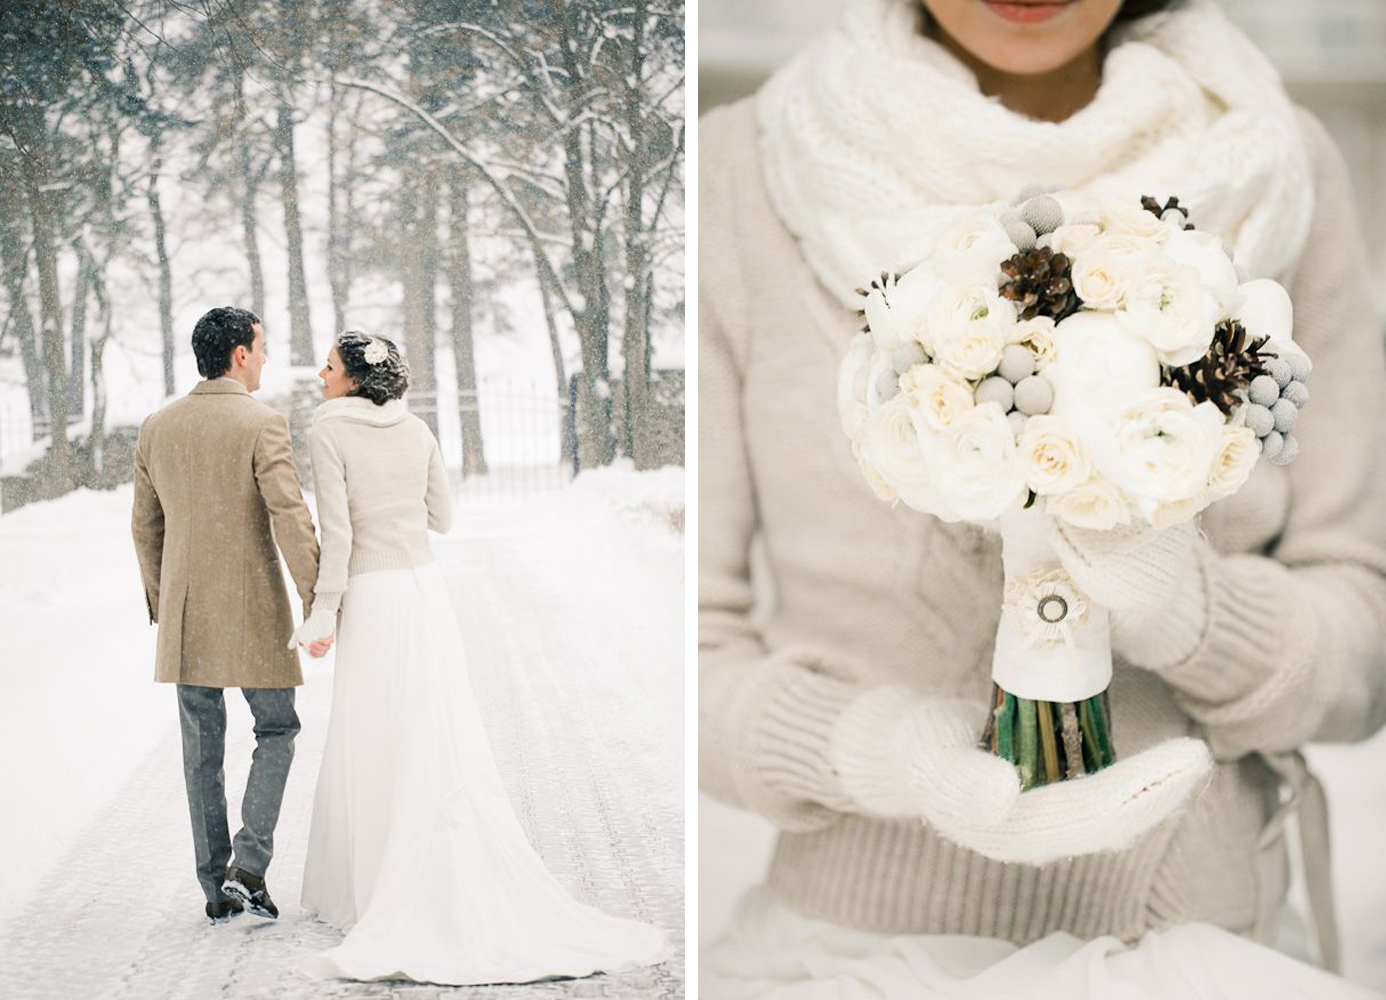 Зимние свадебные платья: выбираем фасон, цвет и материалы (фото)